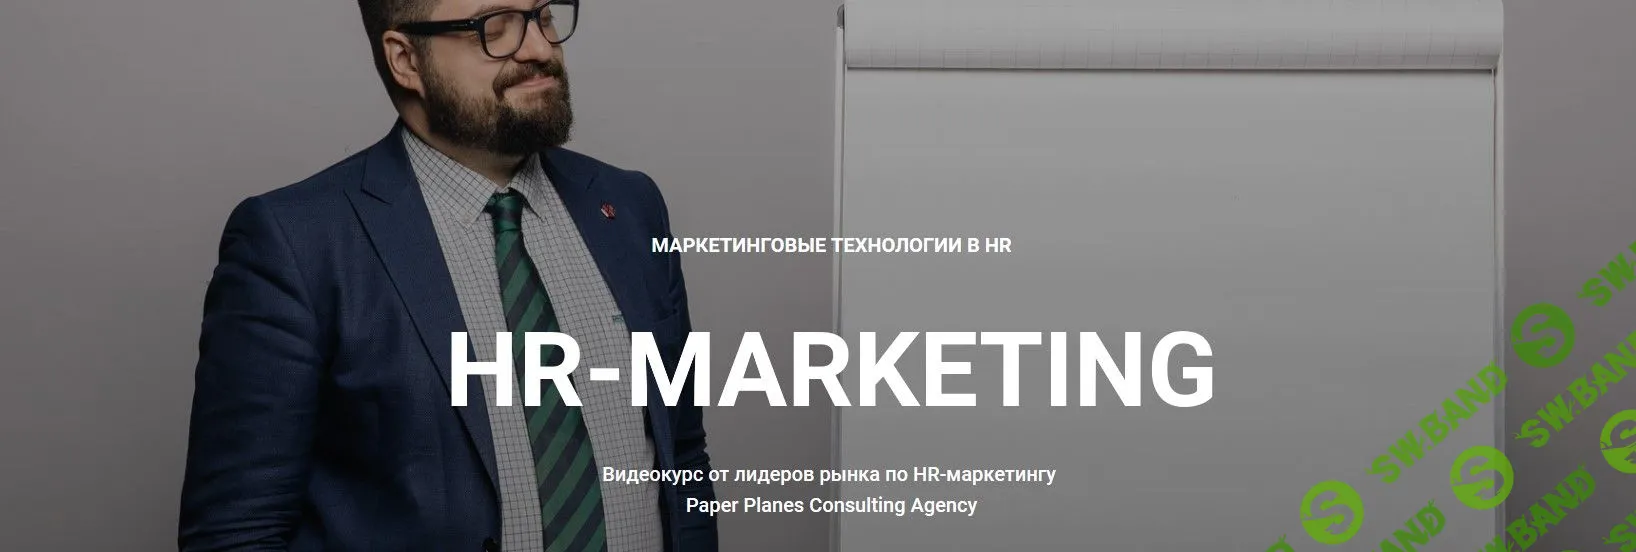 [Илья Балахнин] HR-Маркетинг (2019)